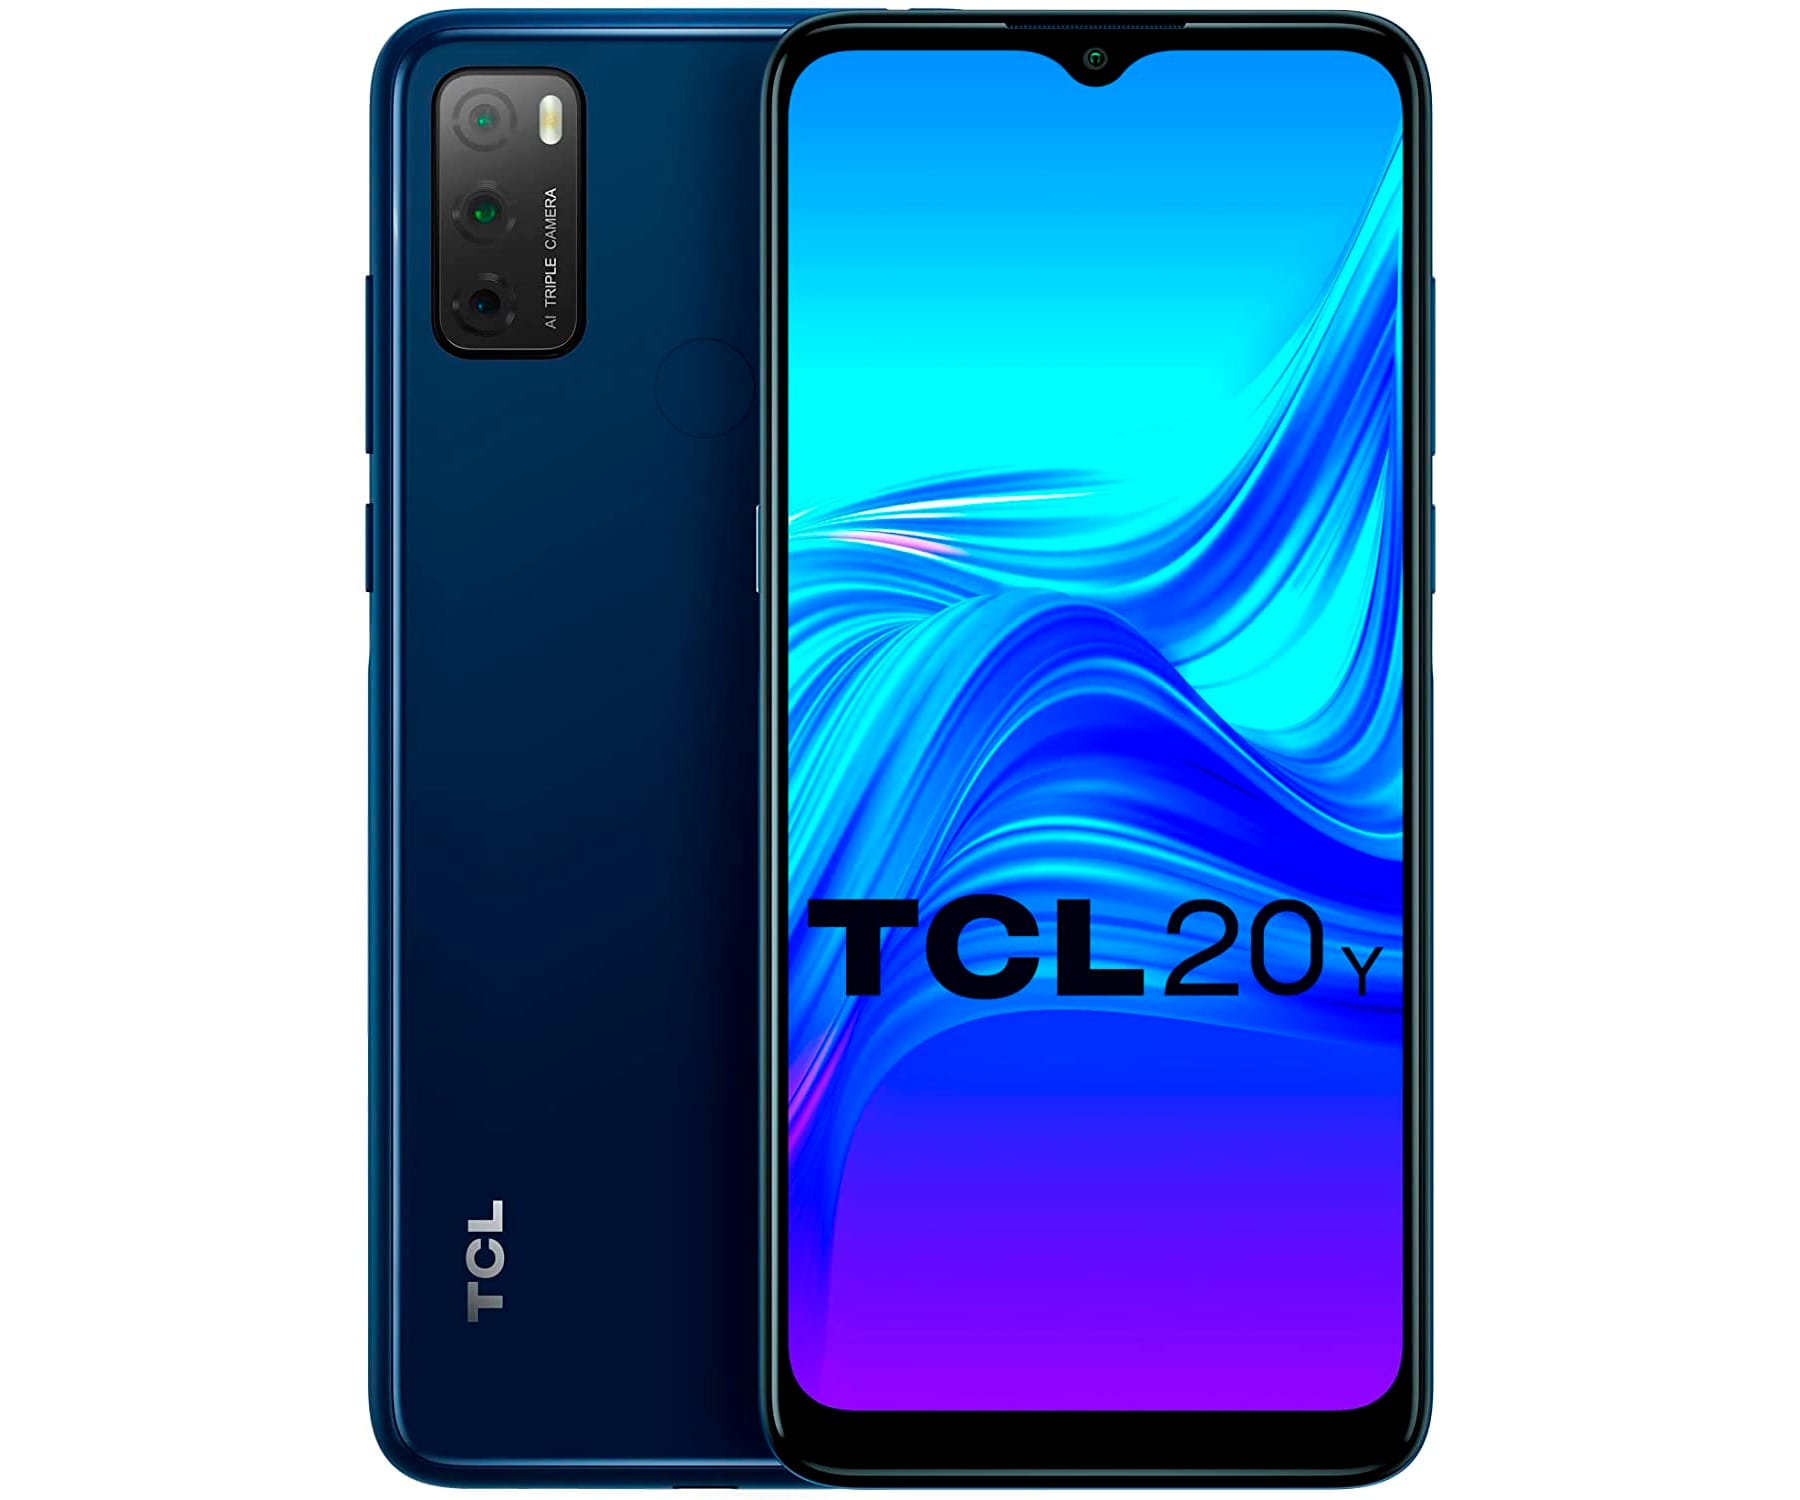 TCL 20Y Azul (Jewelry blue) / 4+64GB / 6.52" IPS / Dual SIM